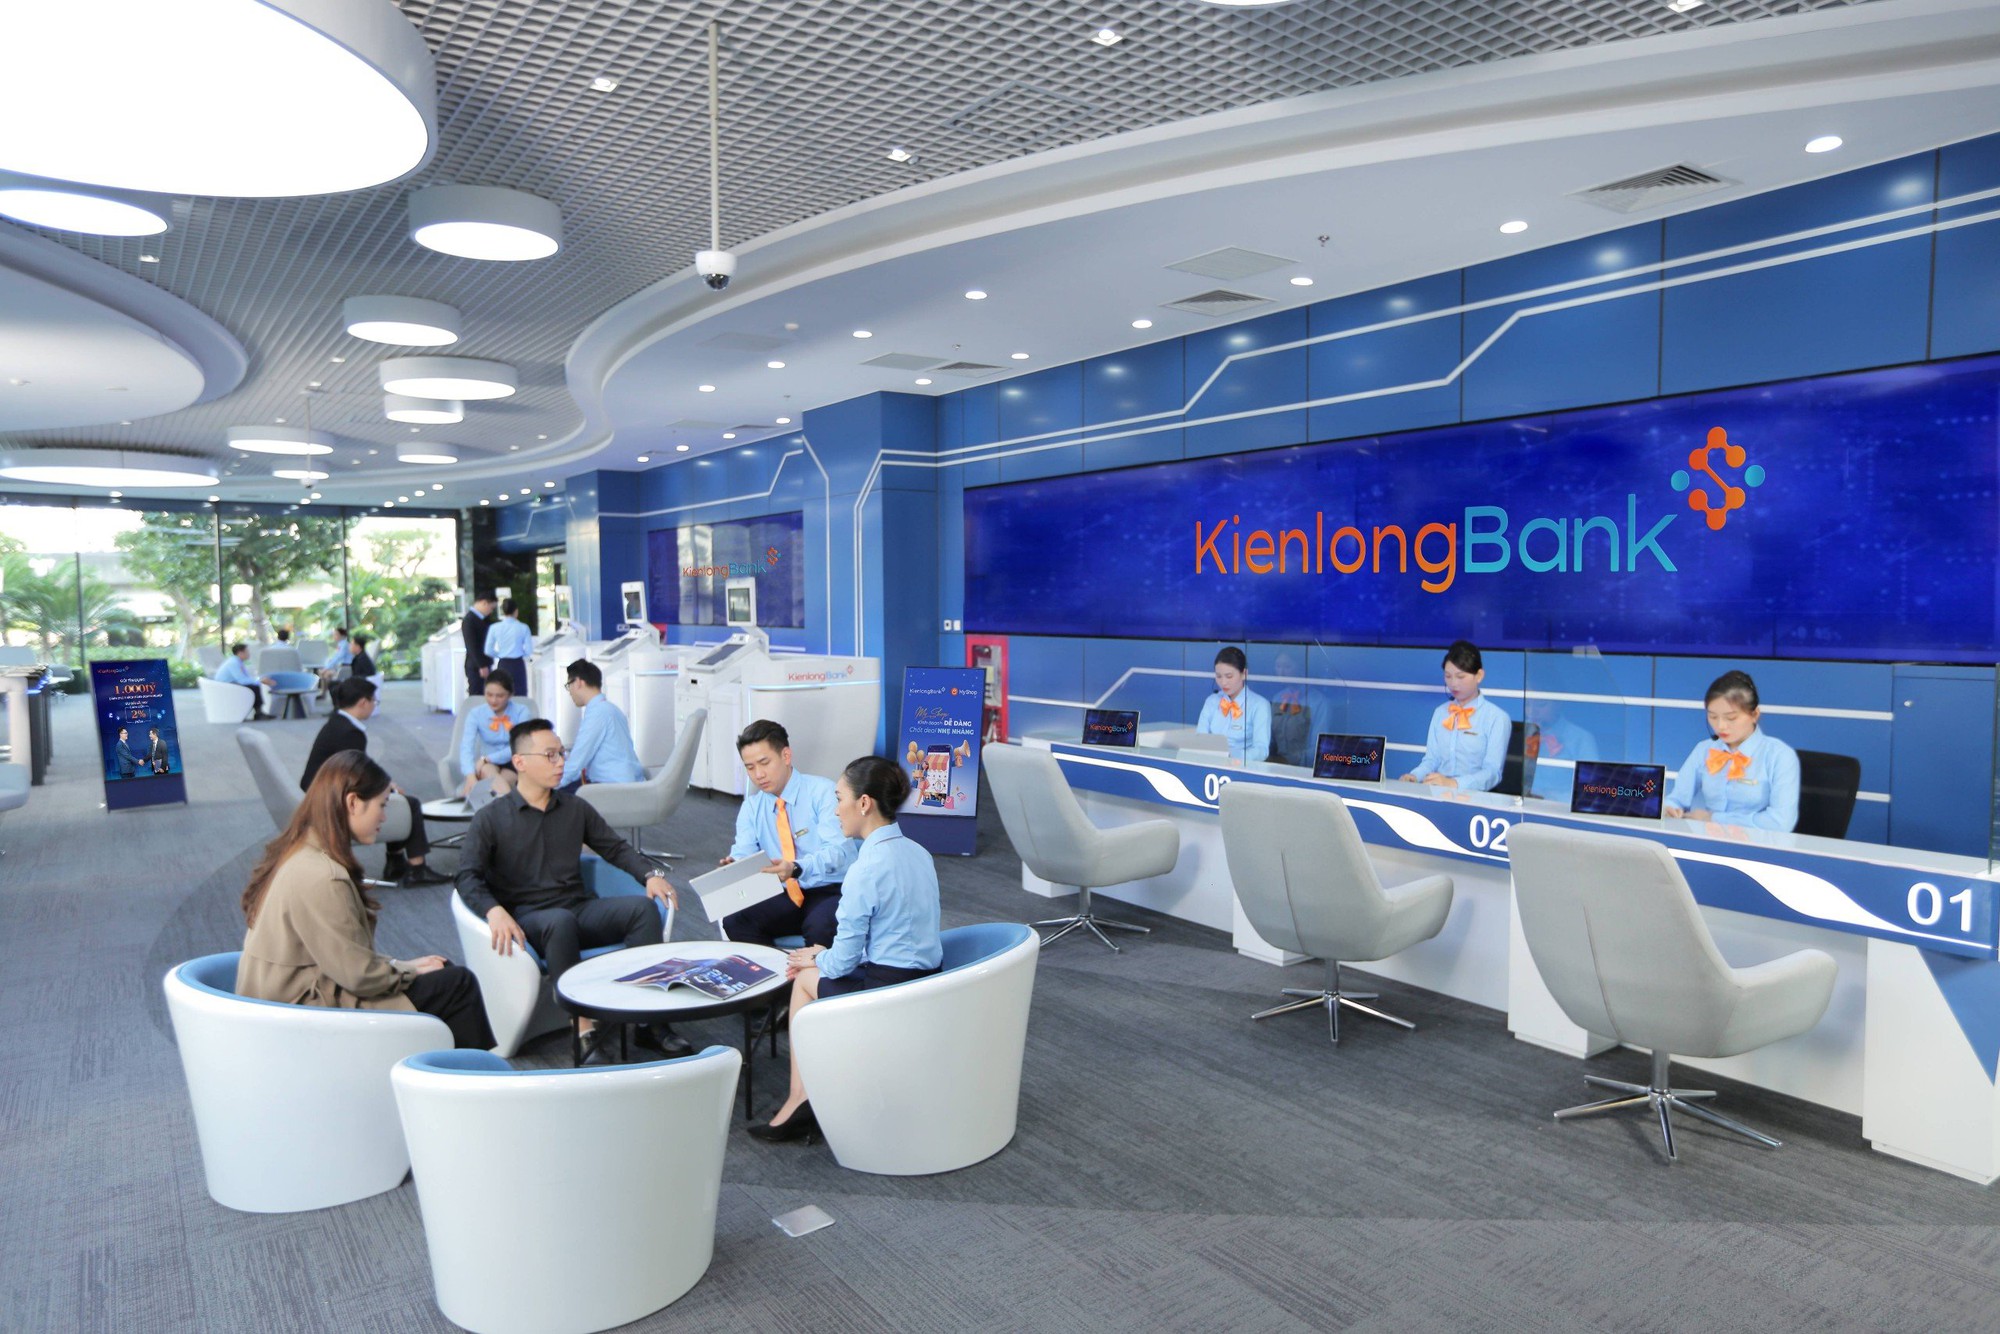 KienlongBank tích cực triển khai các chương trình vay vốn ưu đãi với lãi suất hấp dẫn - Ảnh 1.